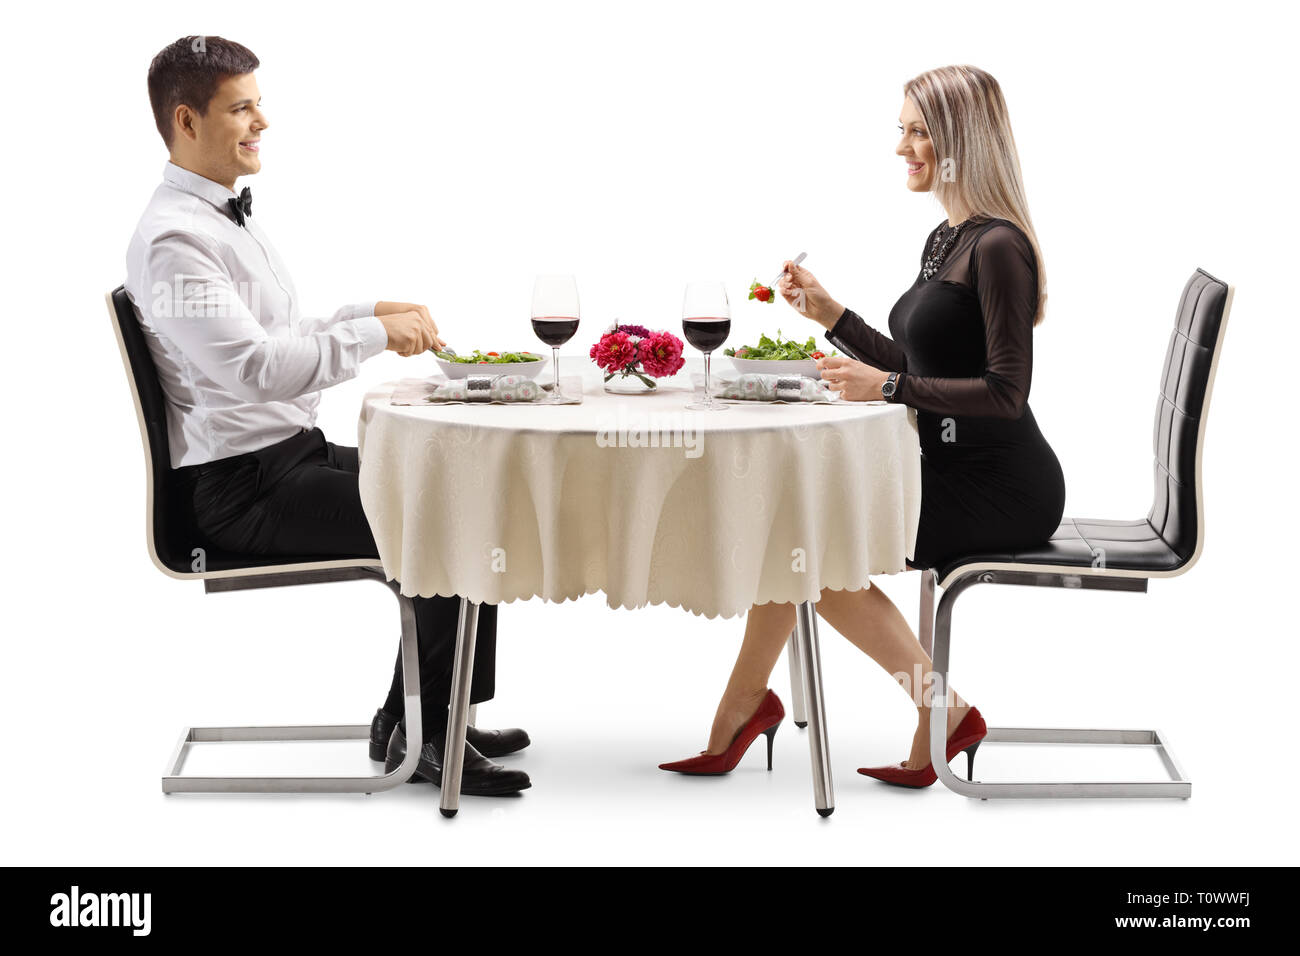 Volle Länge Profil Schoß eines jungen Mann und Frau Salat an einem Tisch auf weißem Hintergrund Stockfoto